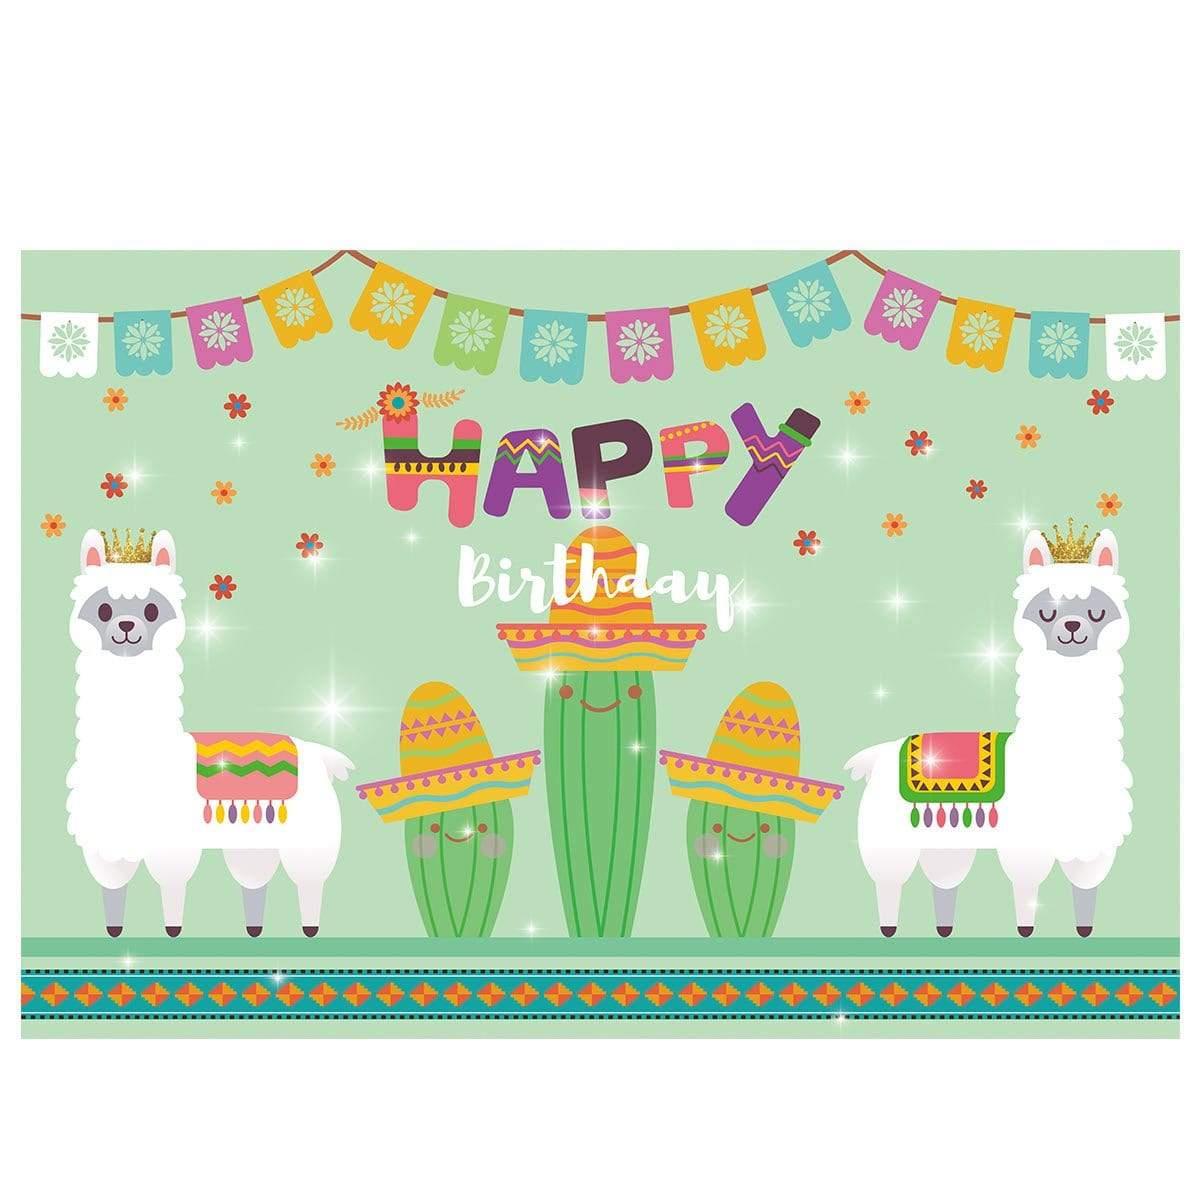 Allenjoy Alpaca Crown Cactus Glitter Happy Birthday Backdrop - Allenjoystudio